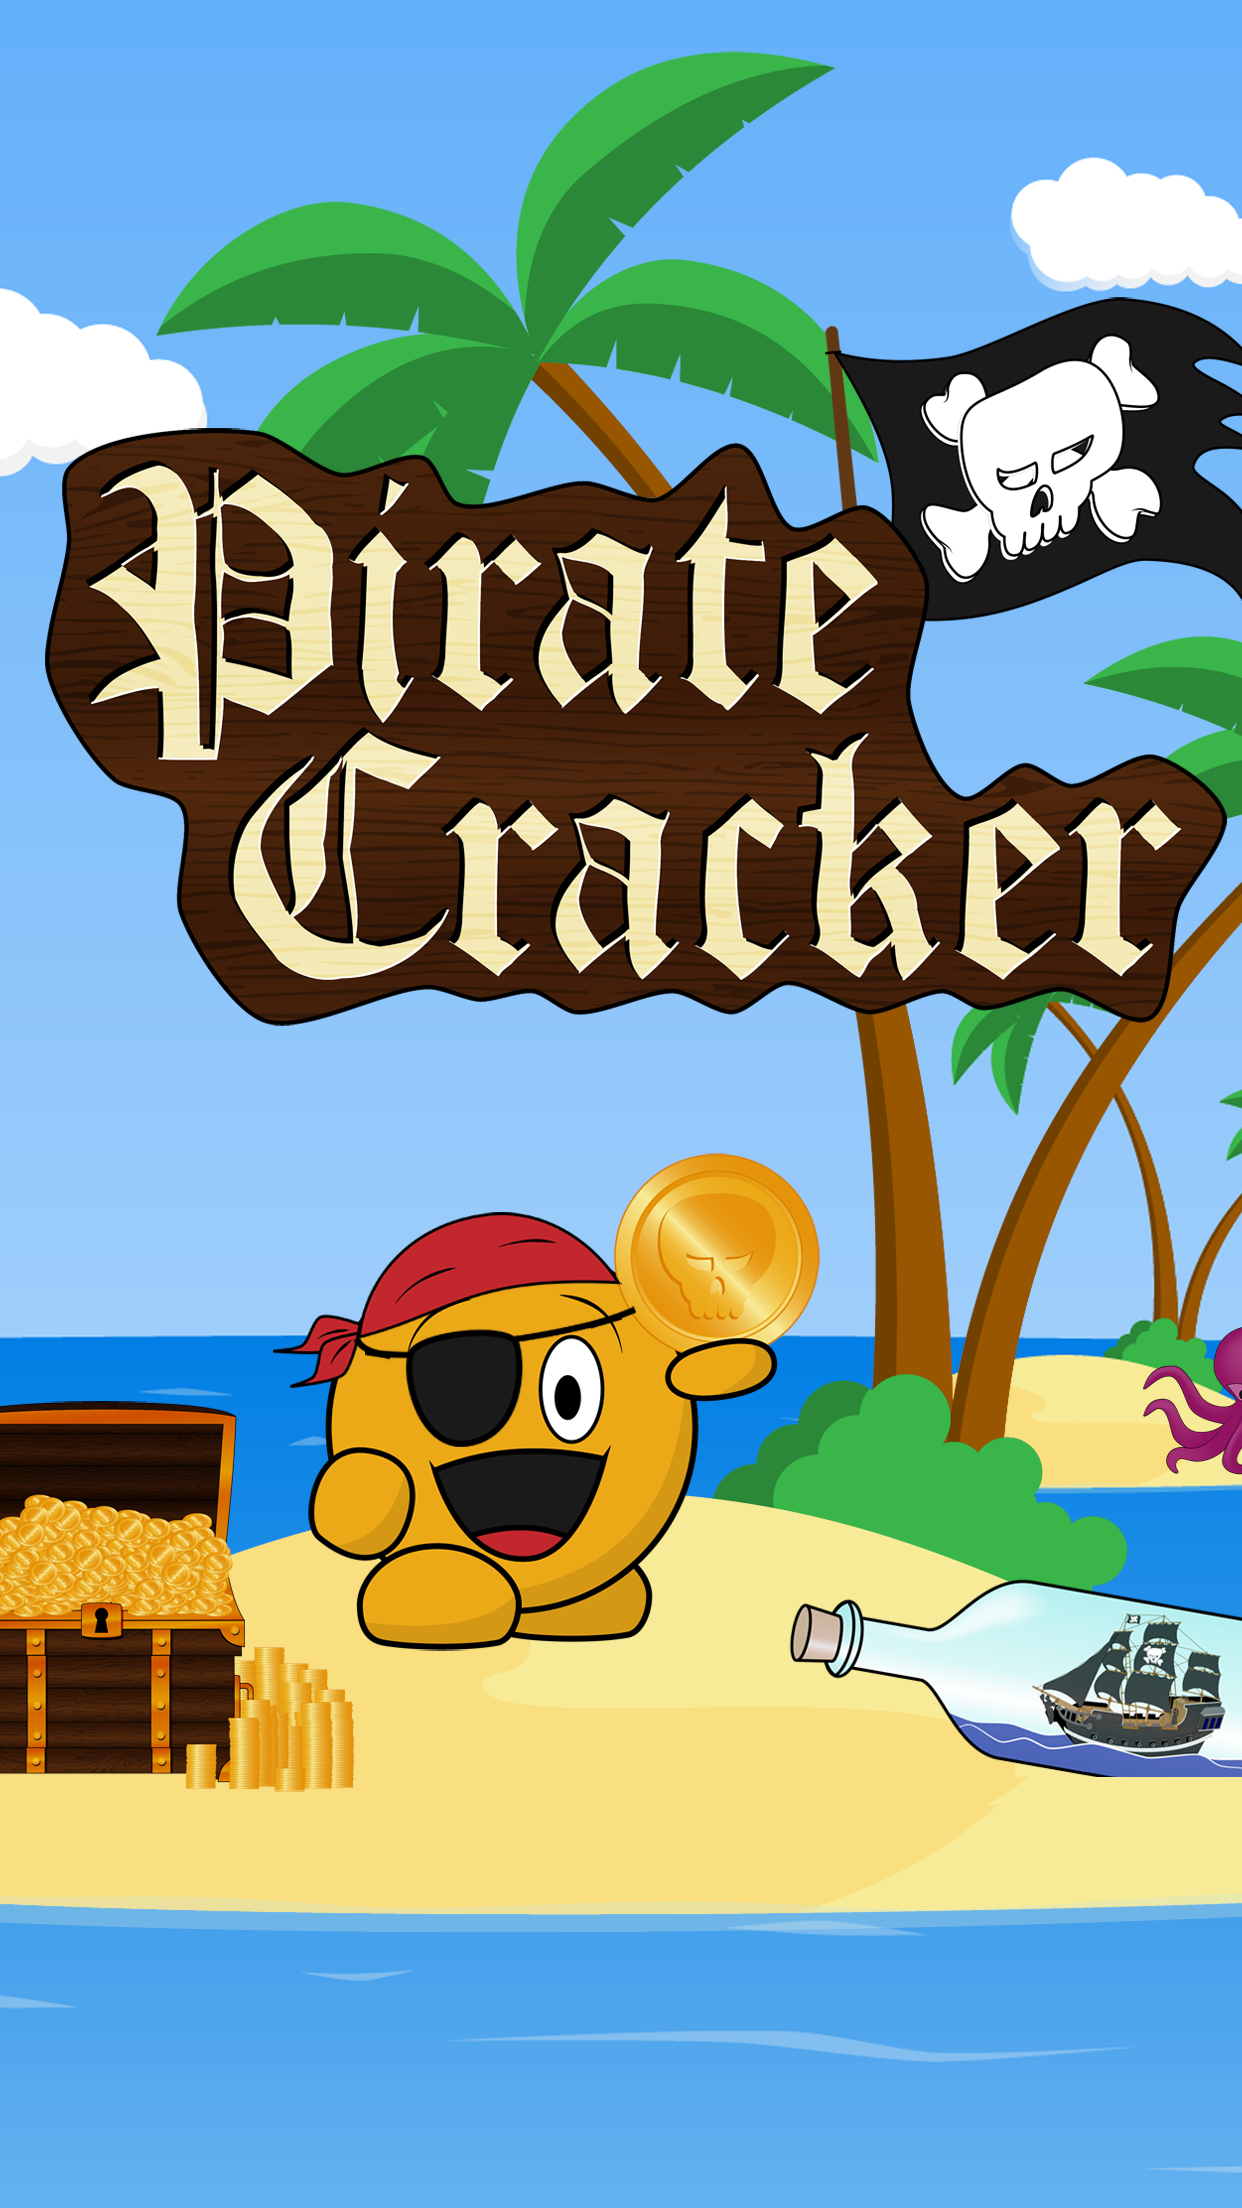 Pirate Cracker